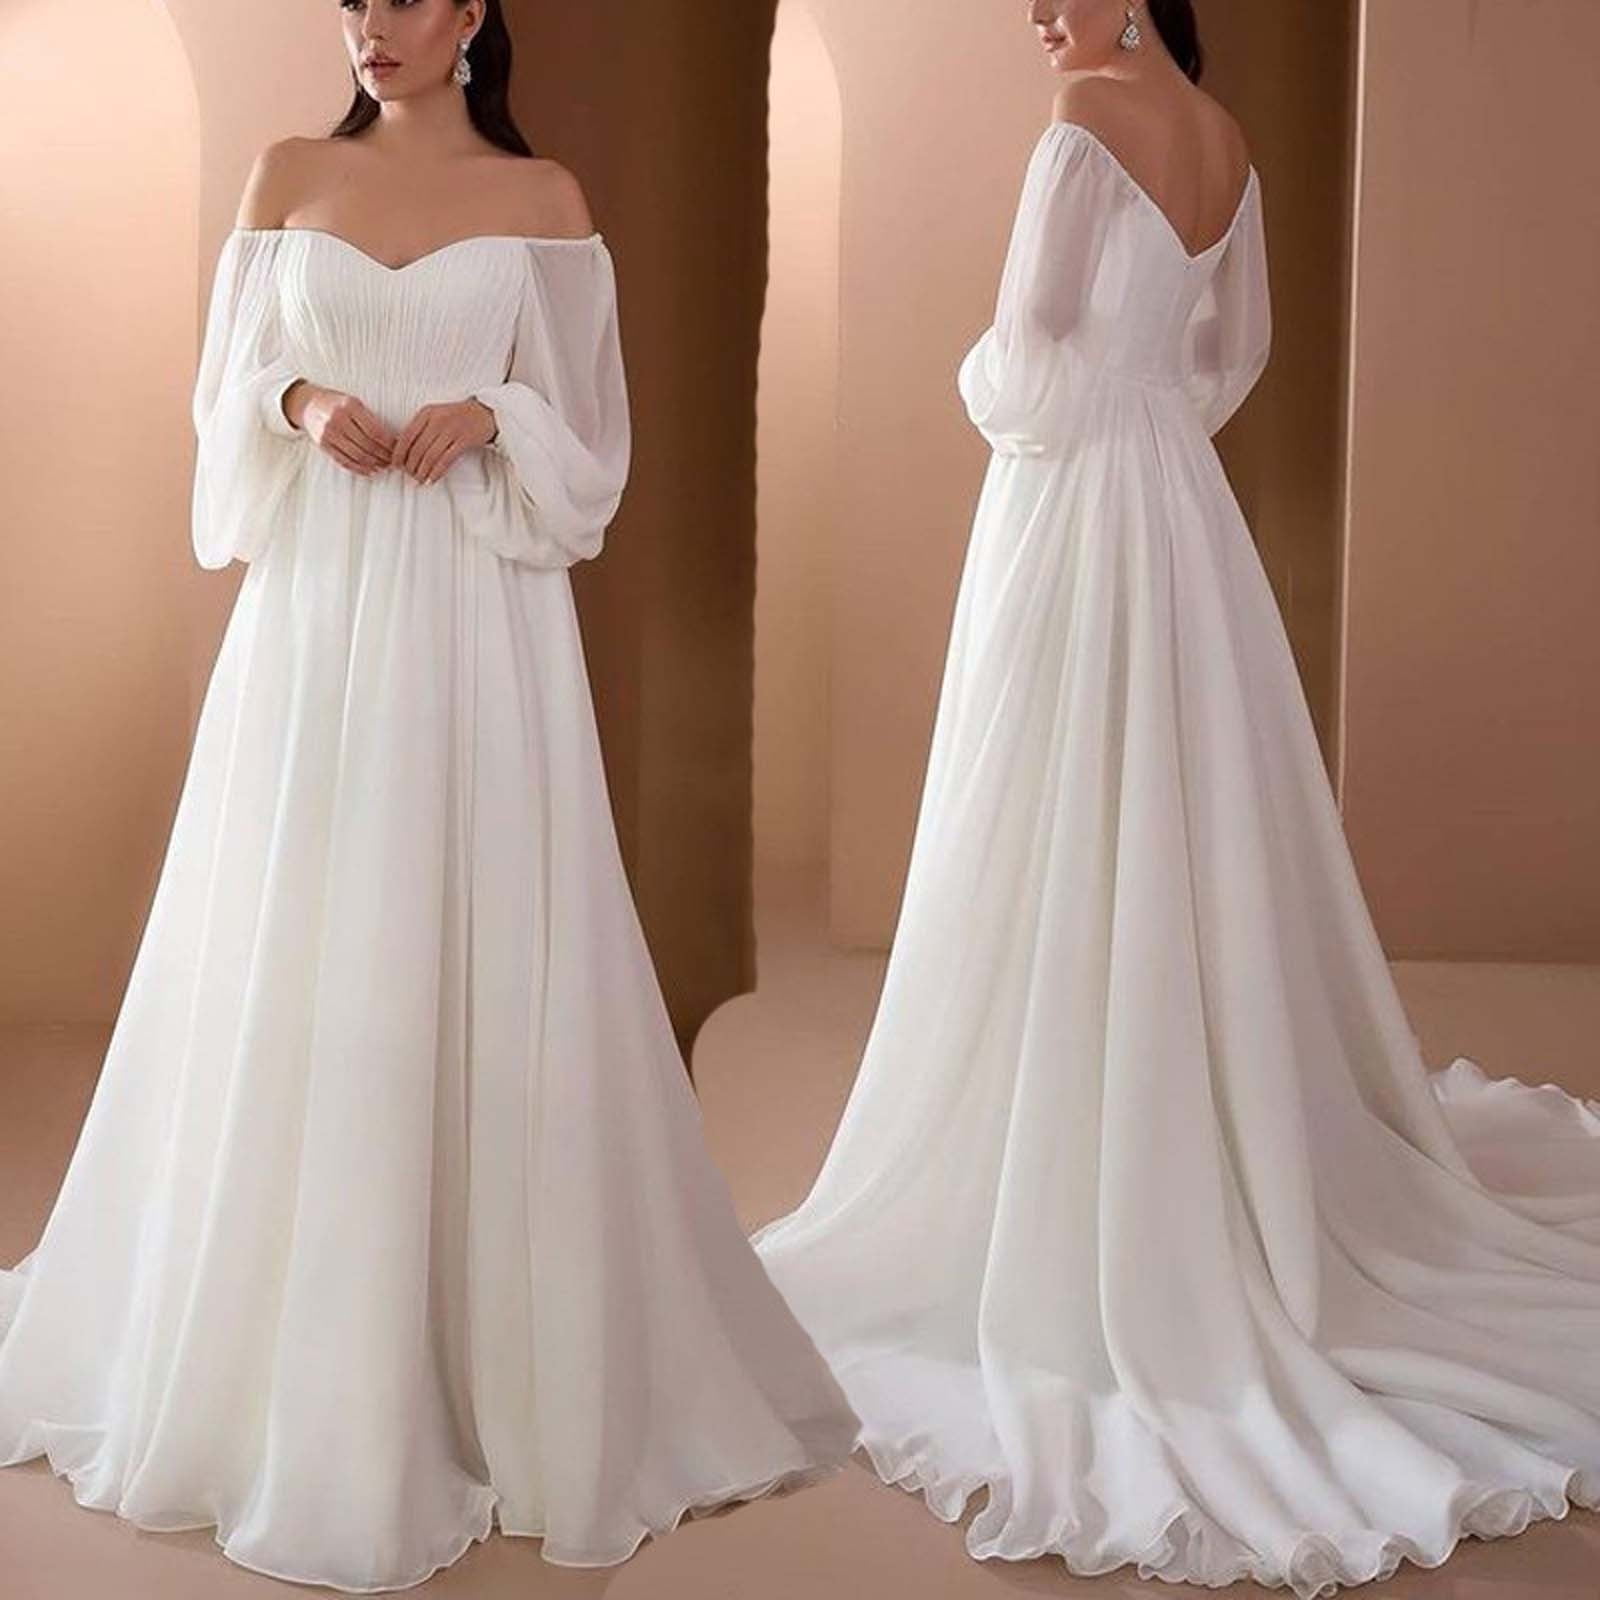 long white dresses for women